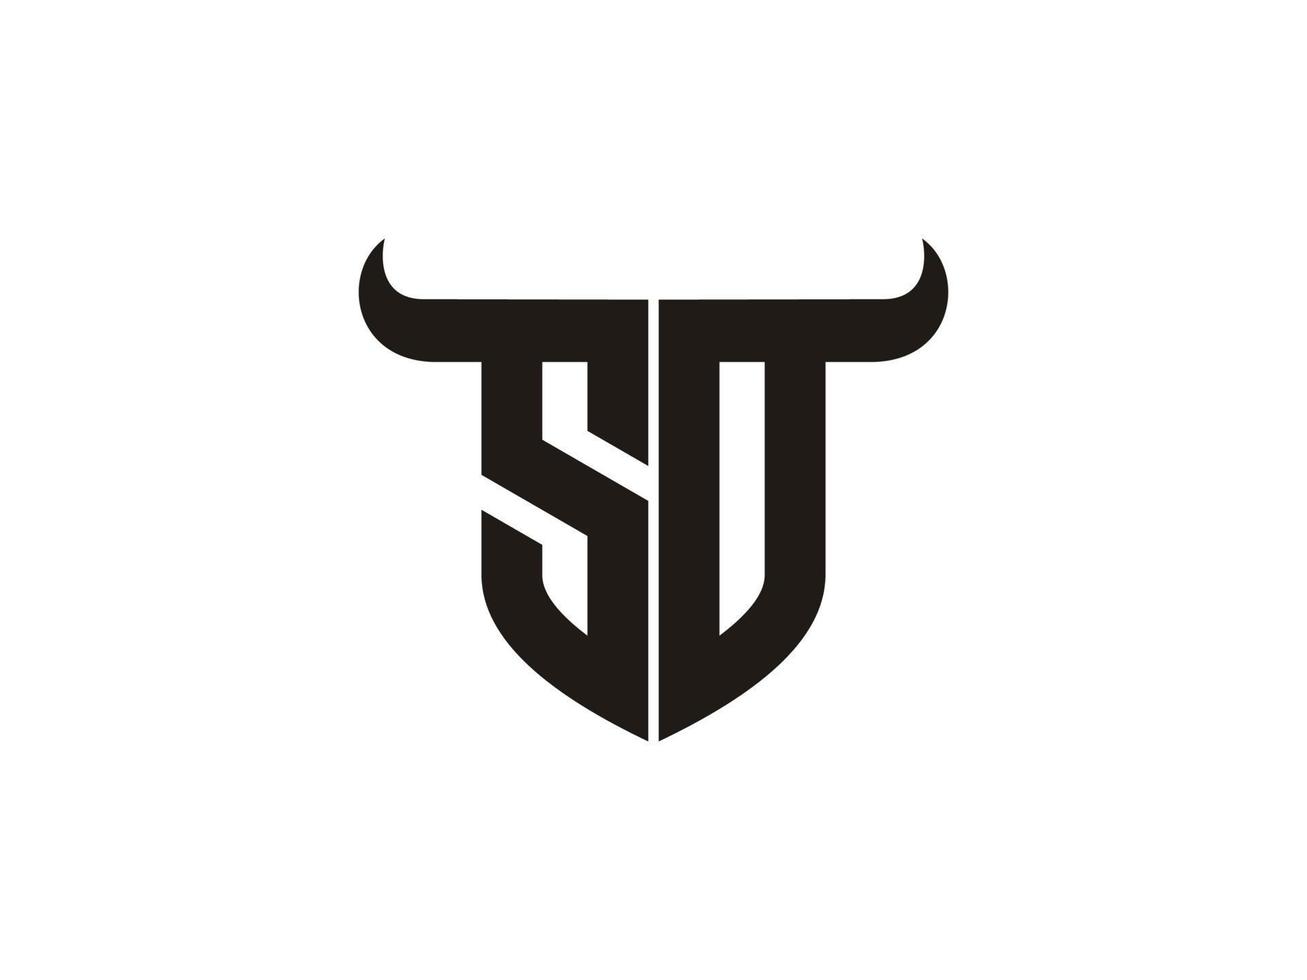 création initiale du logo so bull. vecteur